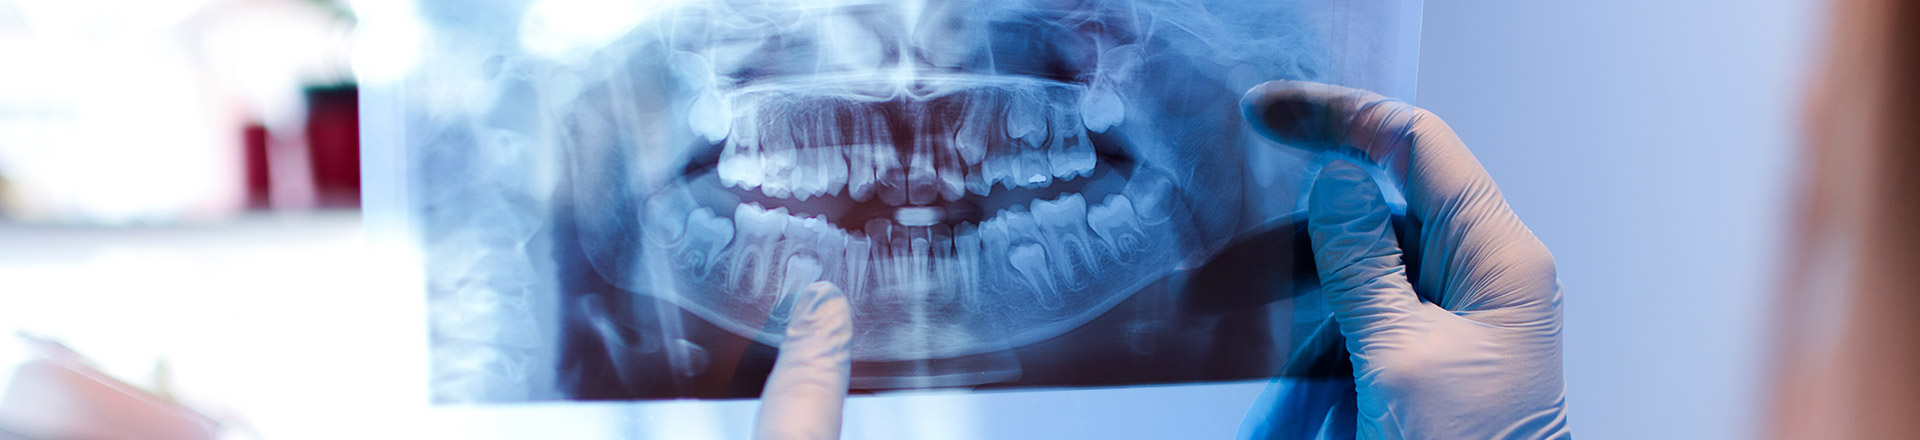 Warum sind Zahnarztbesuche wichtig